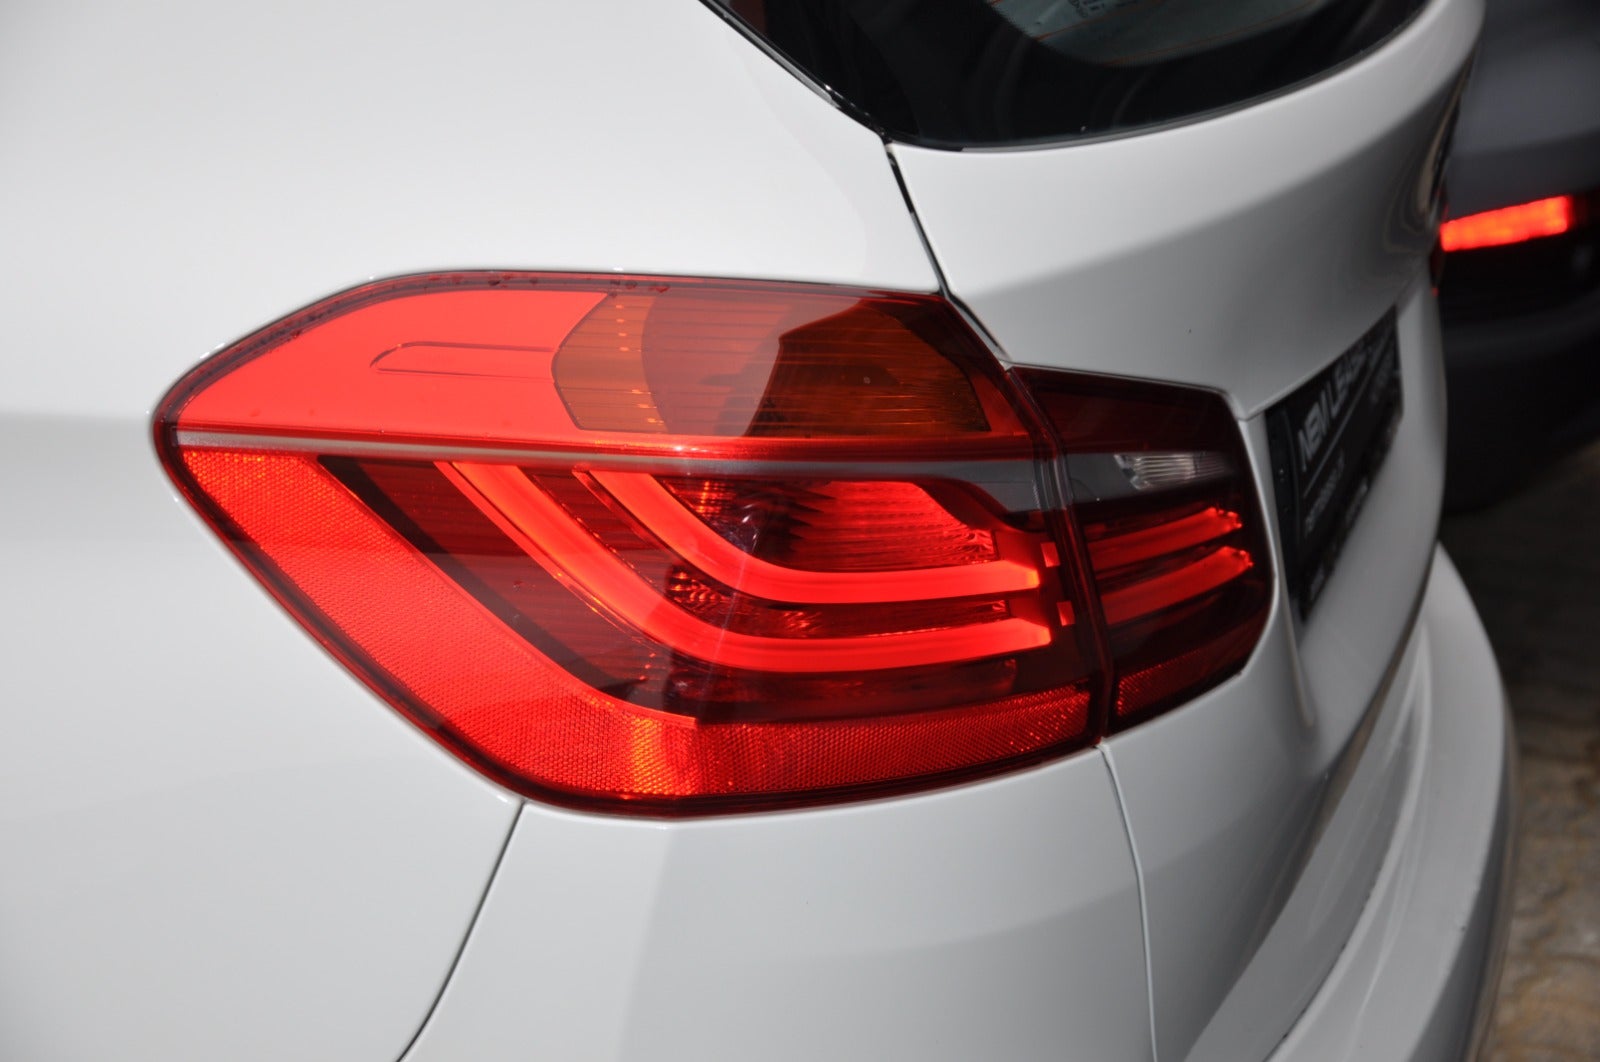 BMW 218d 2015